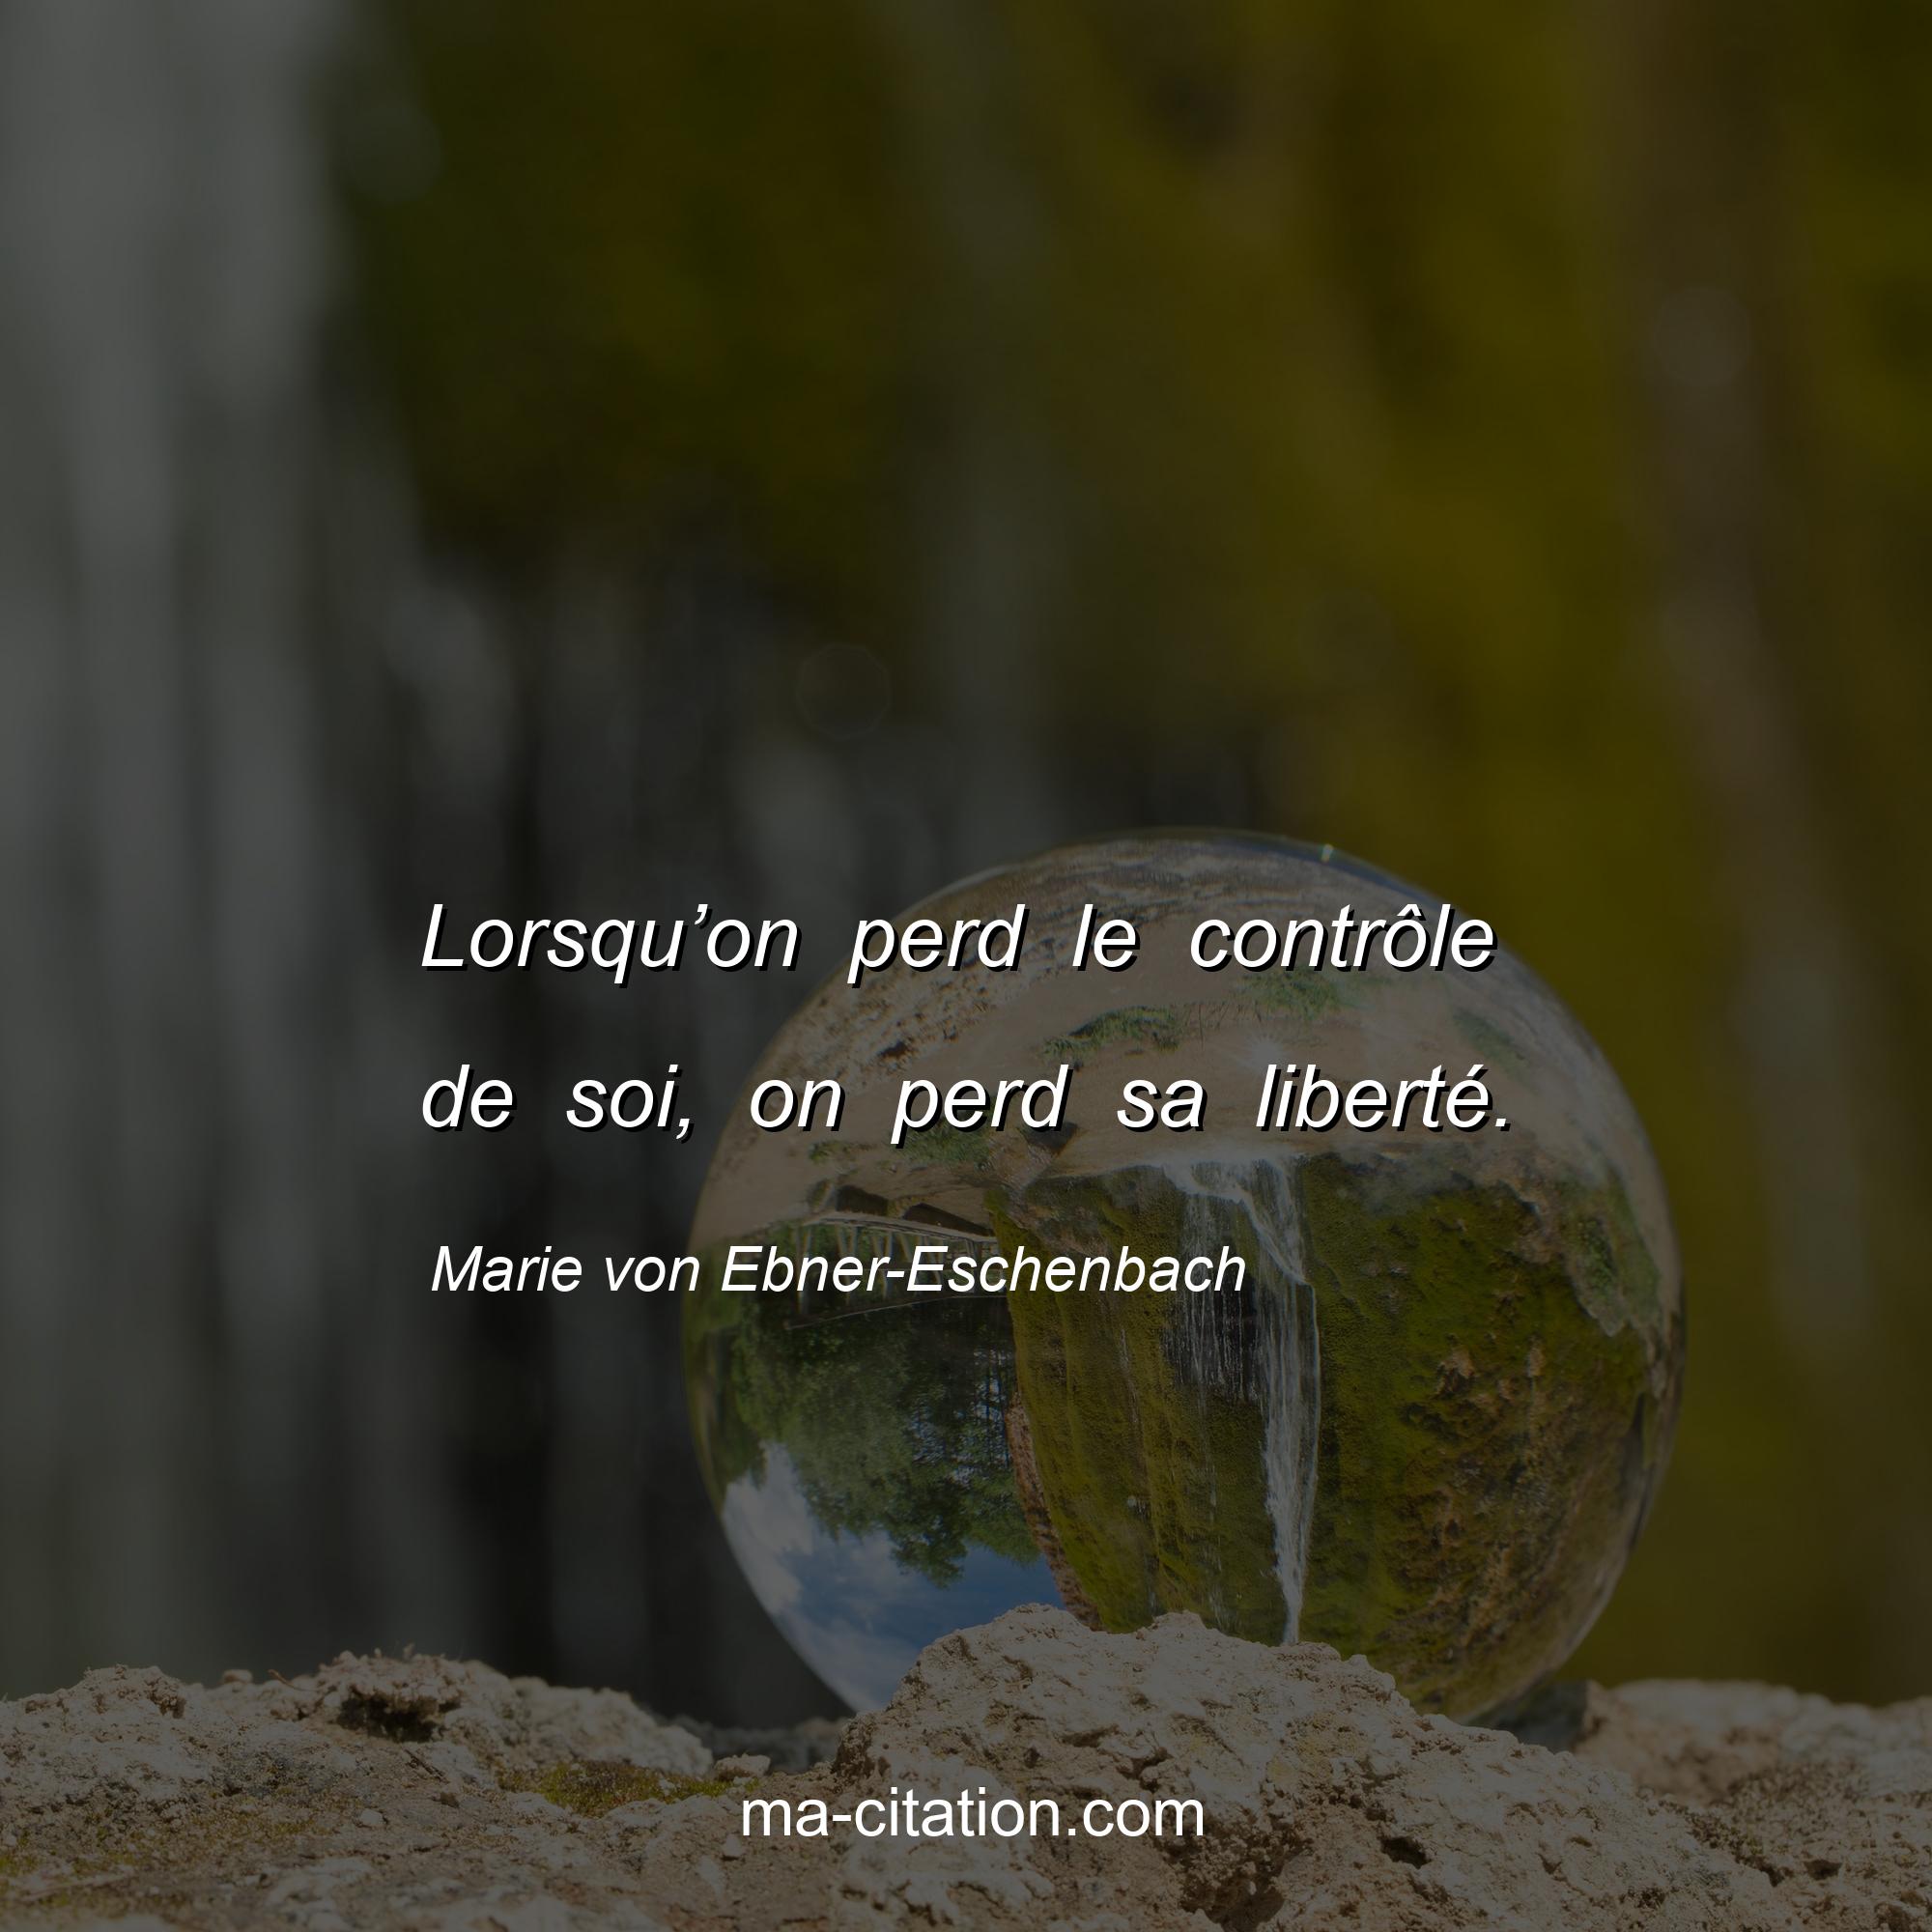 Marie von Ebner-Eschenbach : Lorsqu’on perd le contrôle de soi, on perd sa liberté.